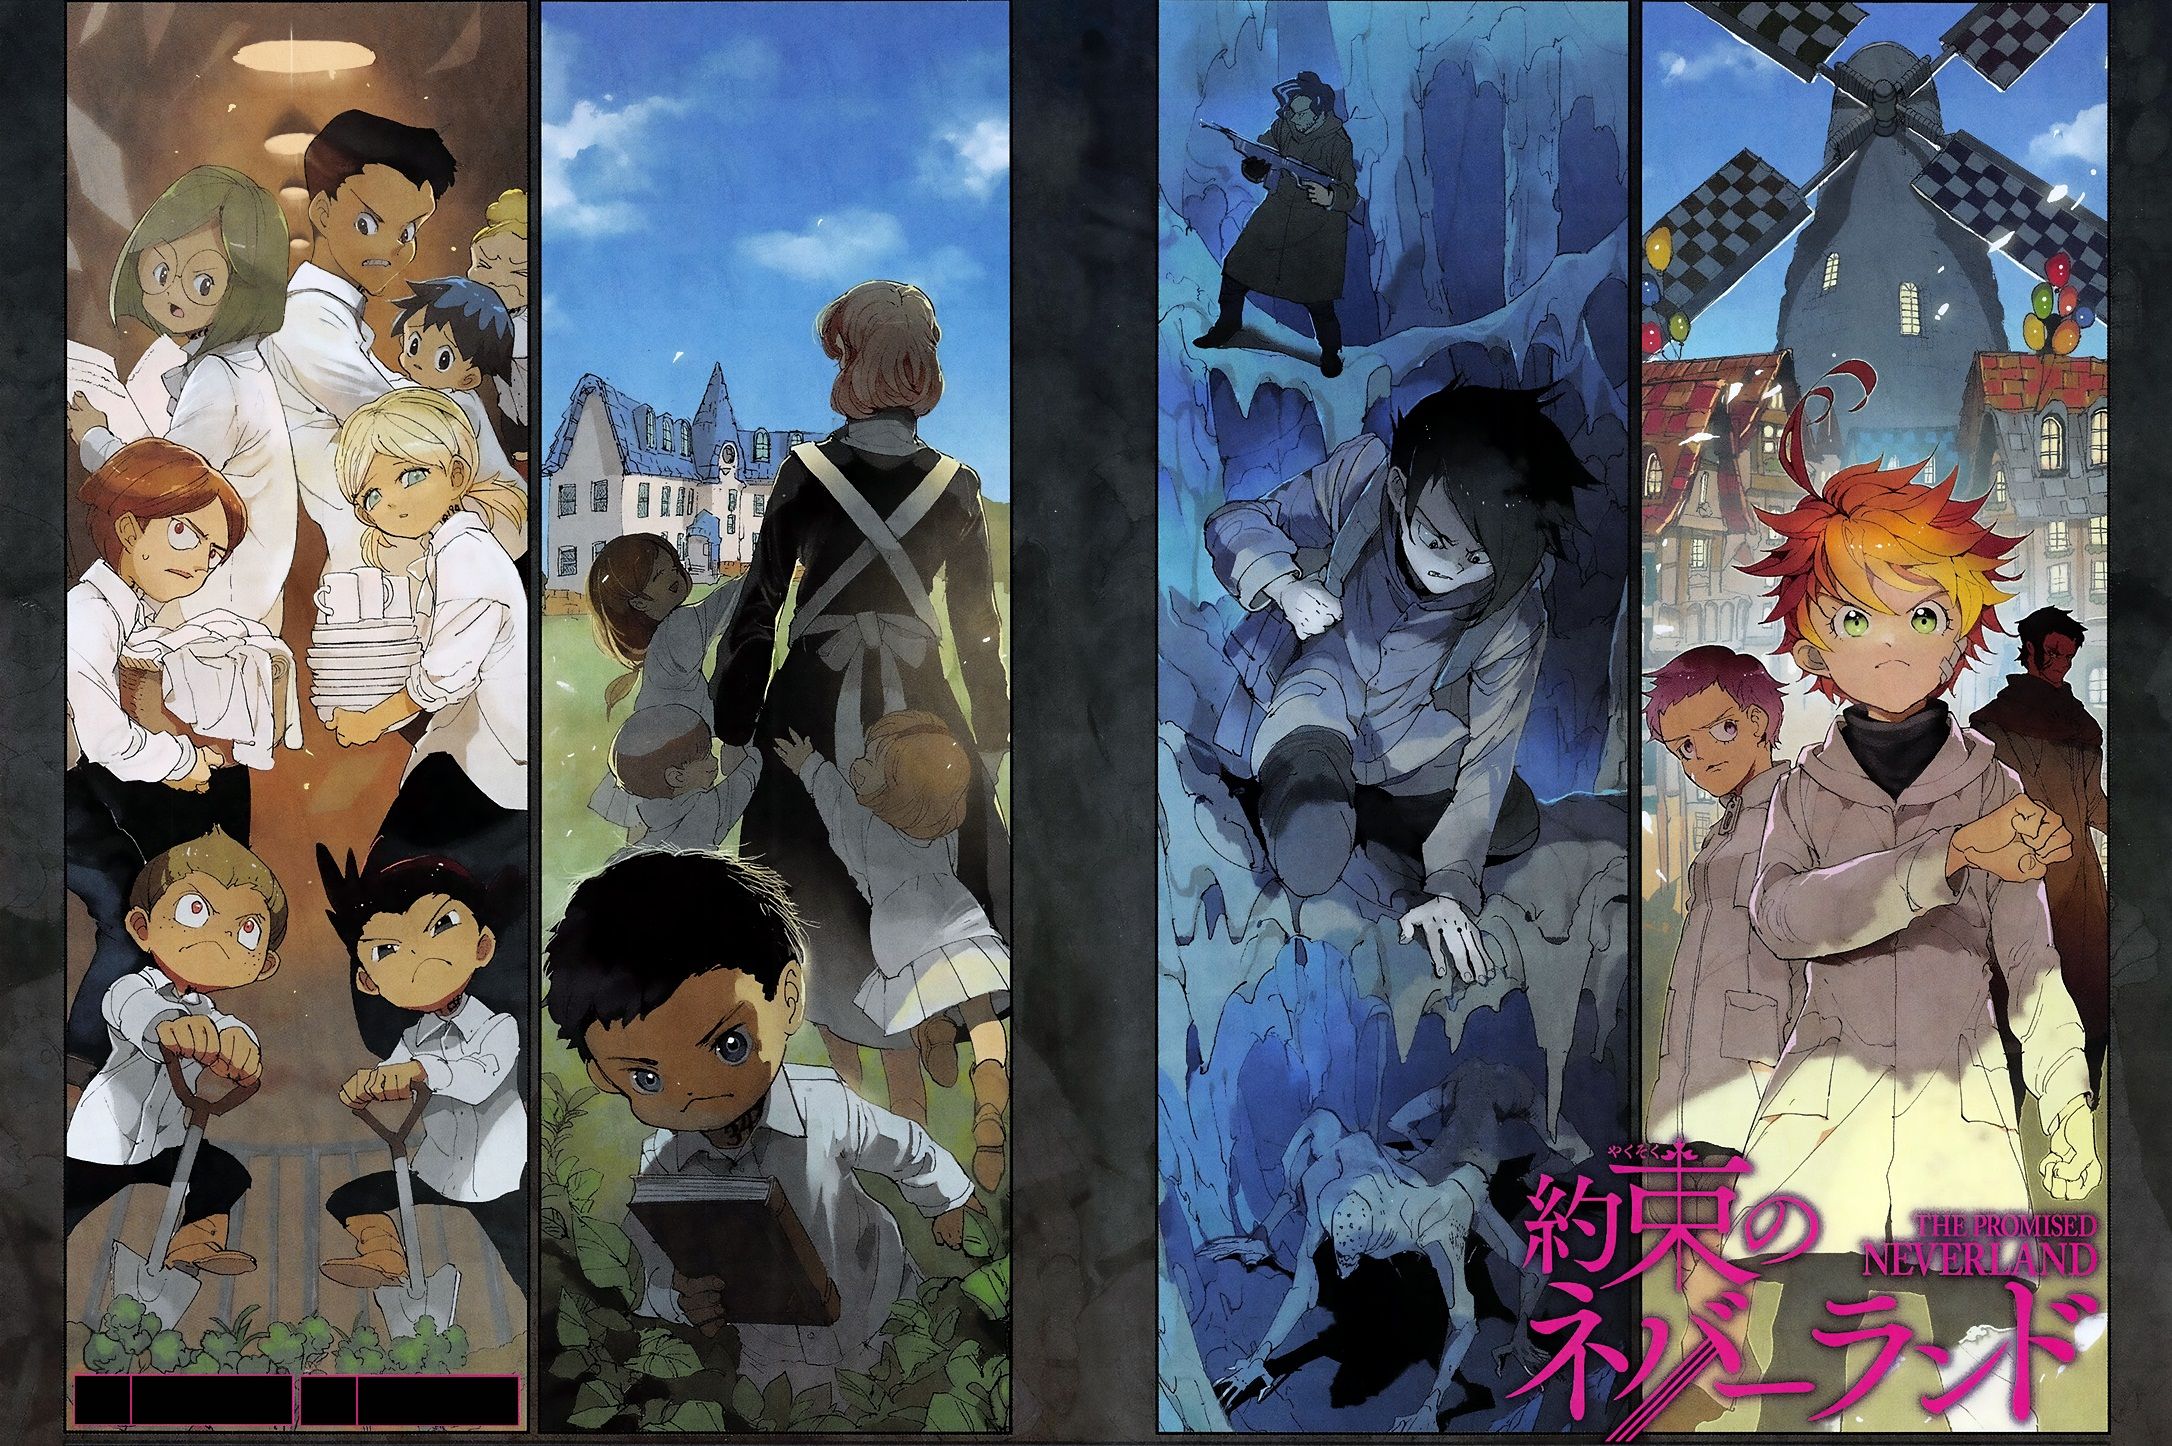 Avis Manga Kazé : The Promised Neverland – Tome 18 avis manga lageekroom